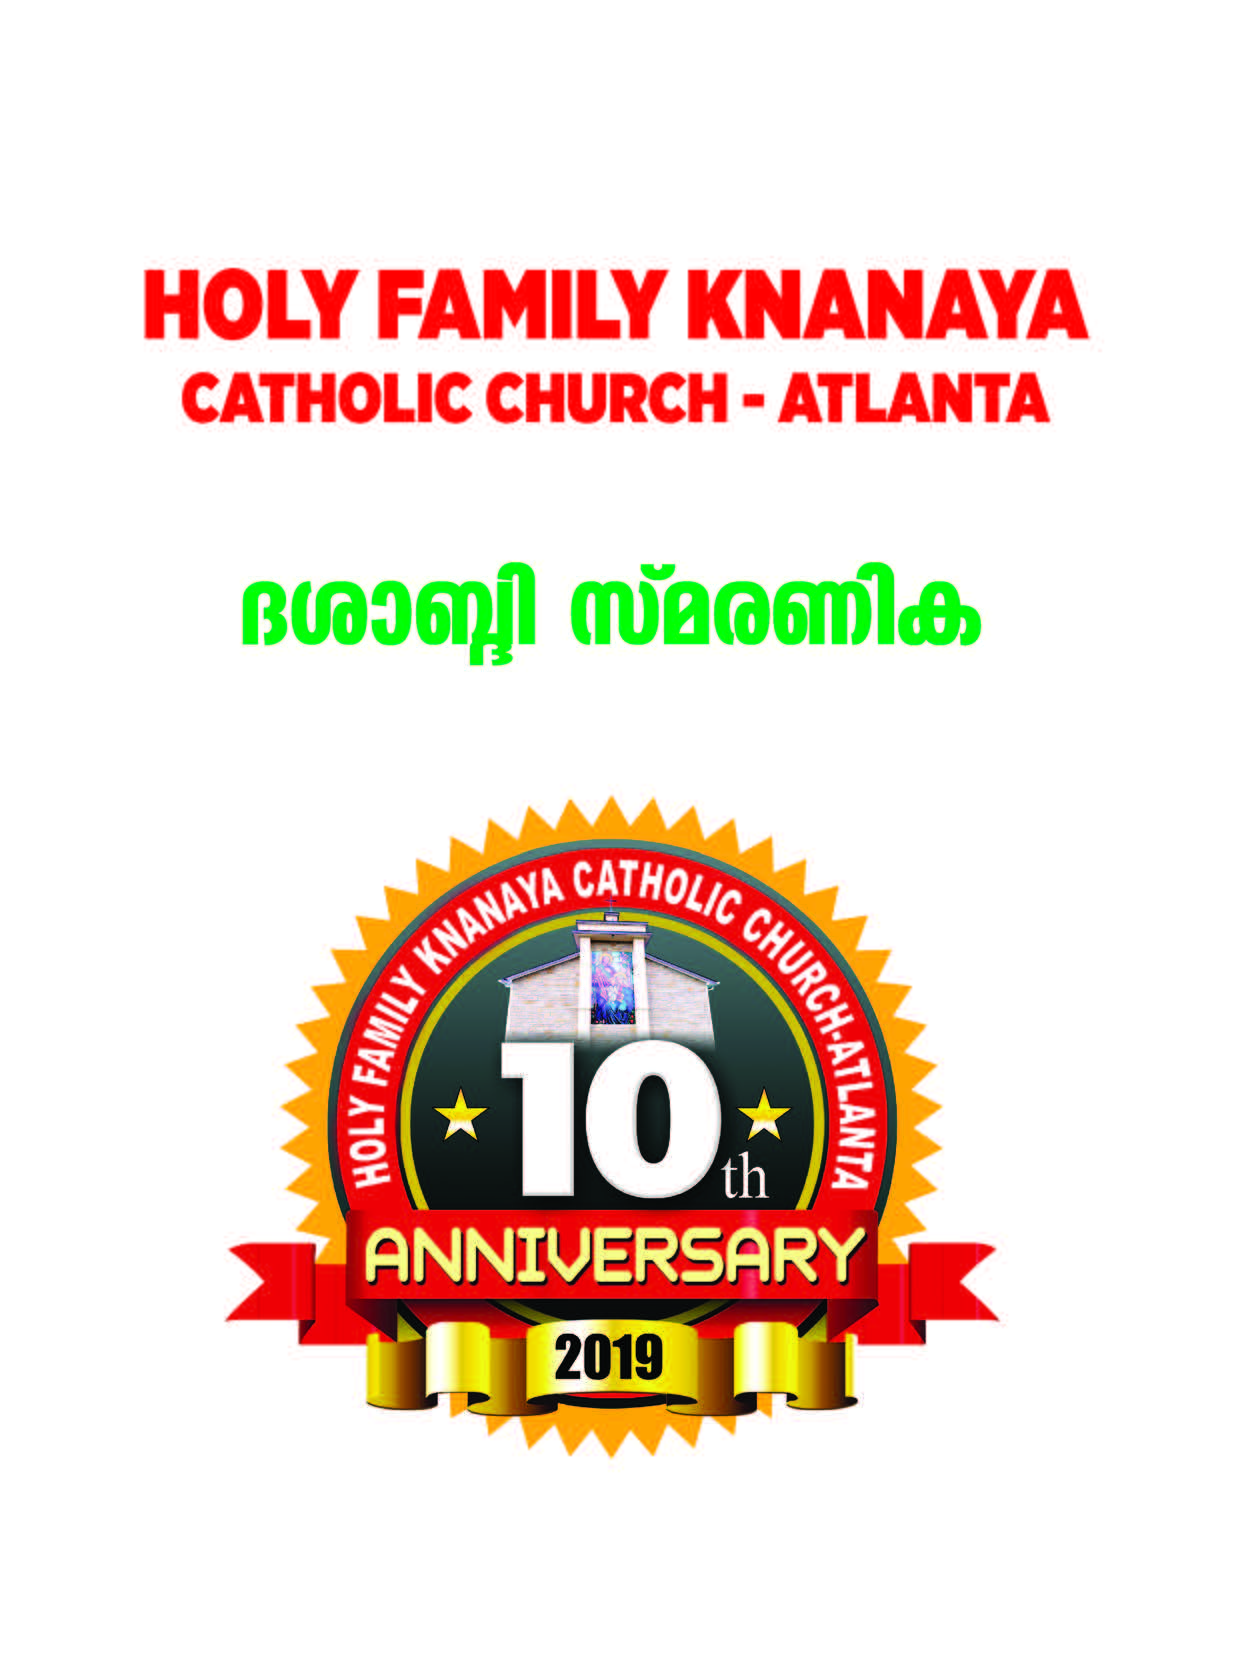 Atlanta Holy Family Knanaya Catholic Church